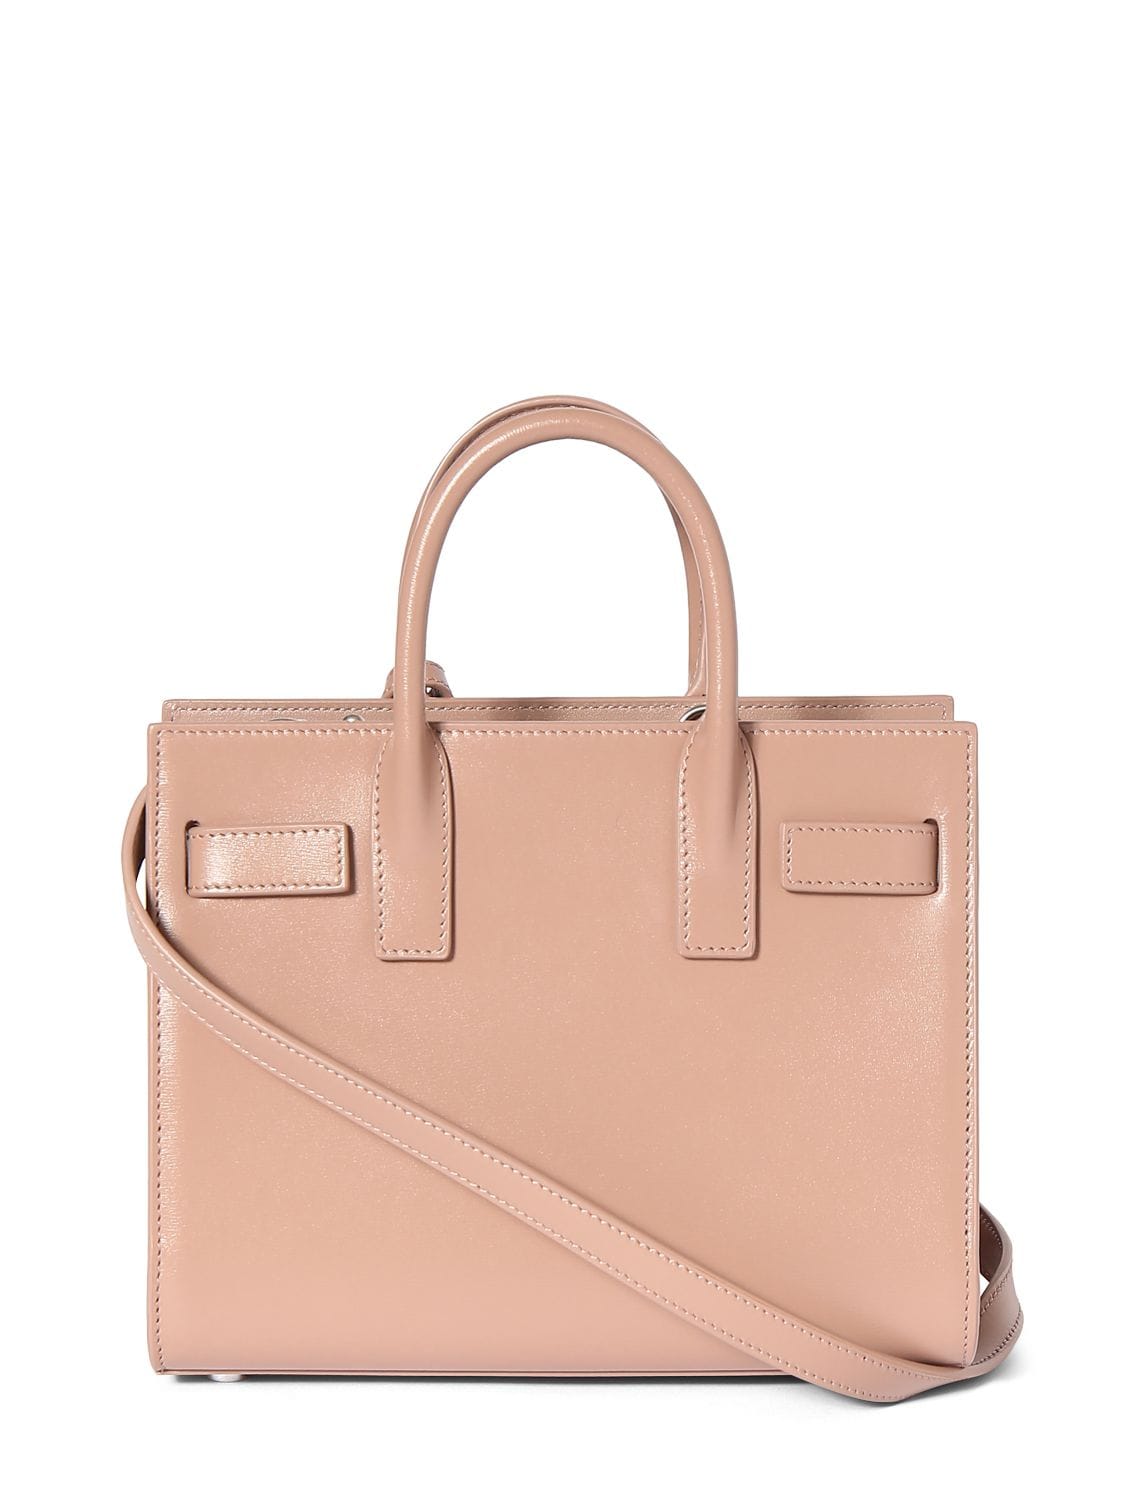 Shop Saint Laurent Nano Sac De Jour Leather Top Handle Bag In Rose